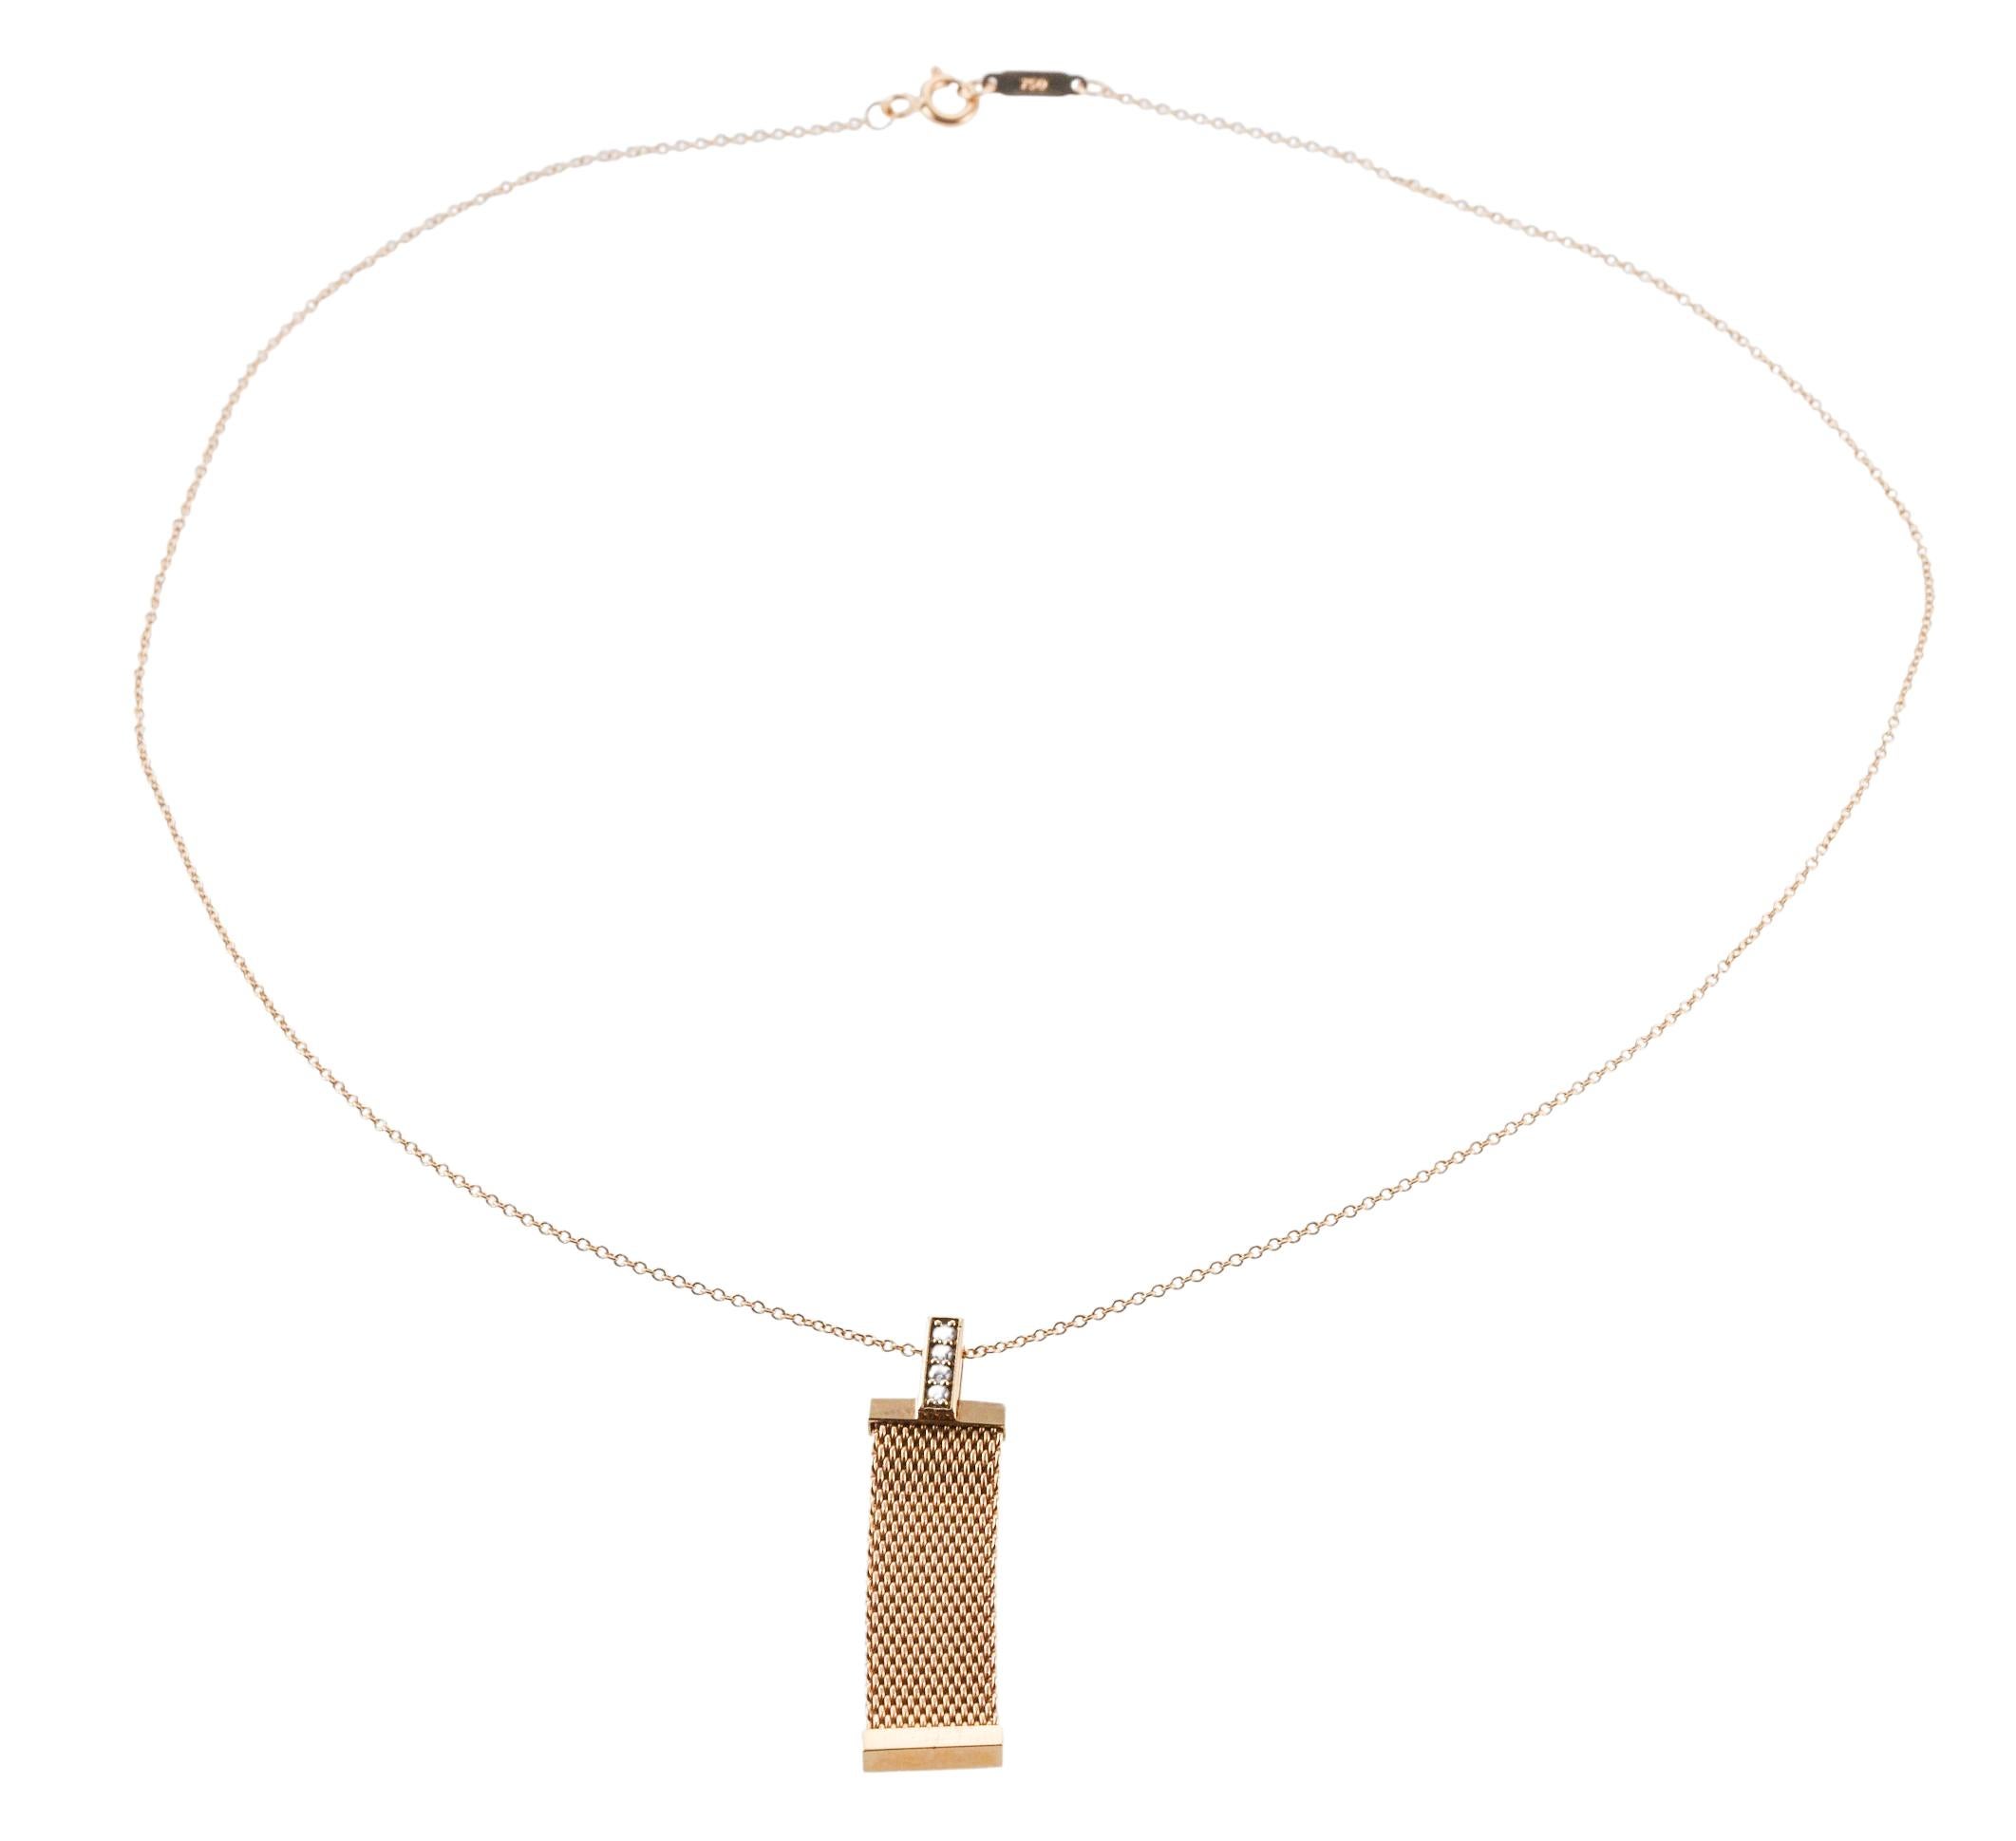 Collier à chaîne en or 18k avec pendentif de la collection Somerset, réalisé par Tiffany & Co, orné de diamants G/VS de 0,04ctw. Le collier mesure 16